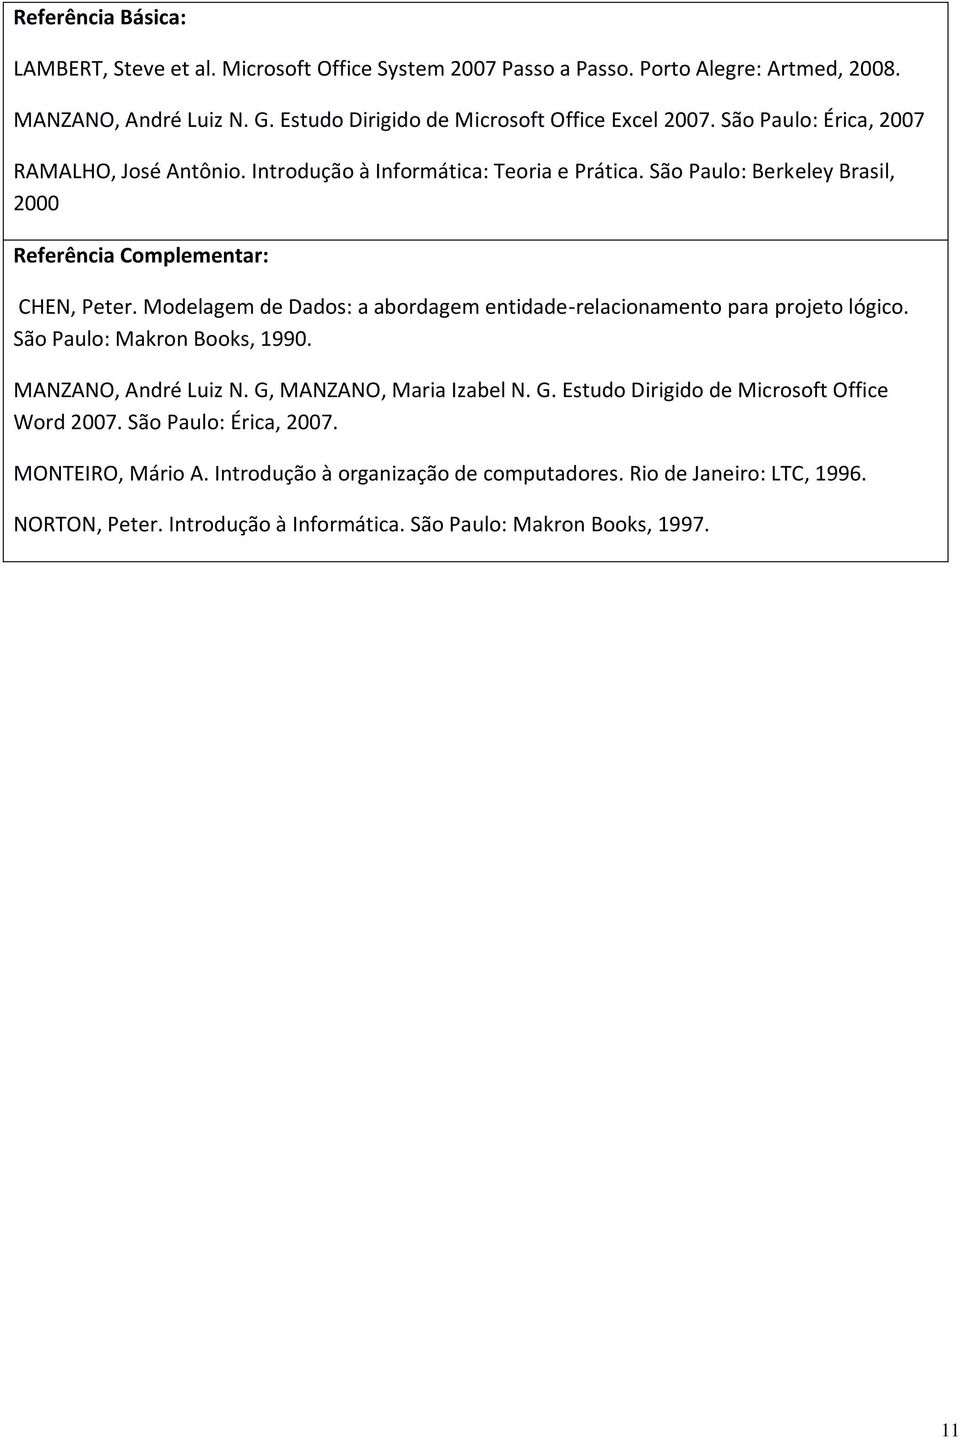 Modelagem de Dados: a abordagem entidade-relacionamento para projeto lógico. São Paulo: Makron Books, 1990. MANZANO, André Luiz N. G, MANZANO, Maria Izabel N. G. Estudo Dirigido de Microsoft Office Word 2007.